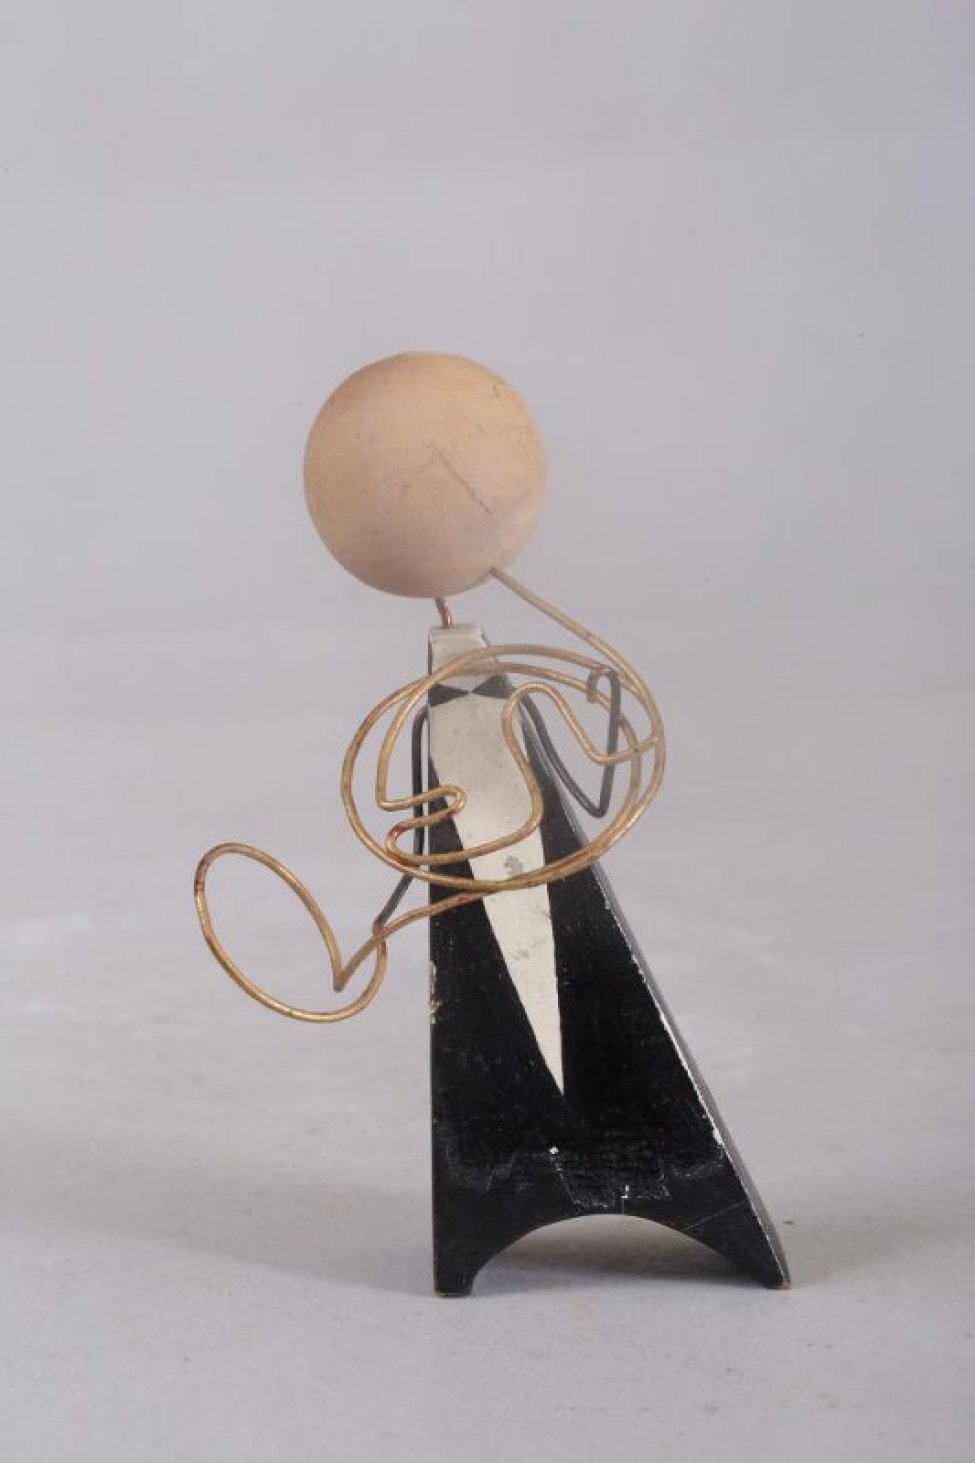 Фигурка в виде черного треугольника с полукруглой выемкой внизу, с белой клинообразной полоской, с головой в виде желтого шарика. Инструмент и руки из проволоки.